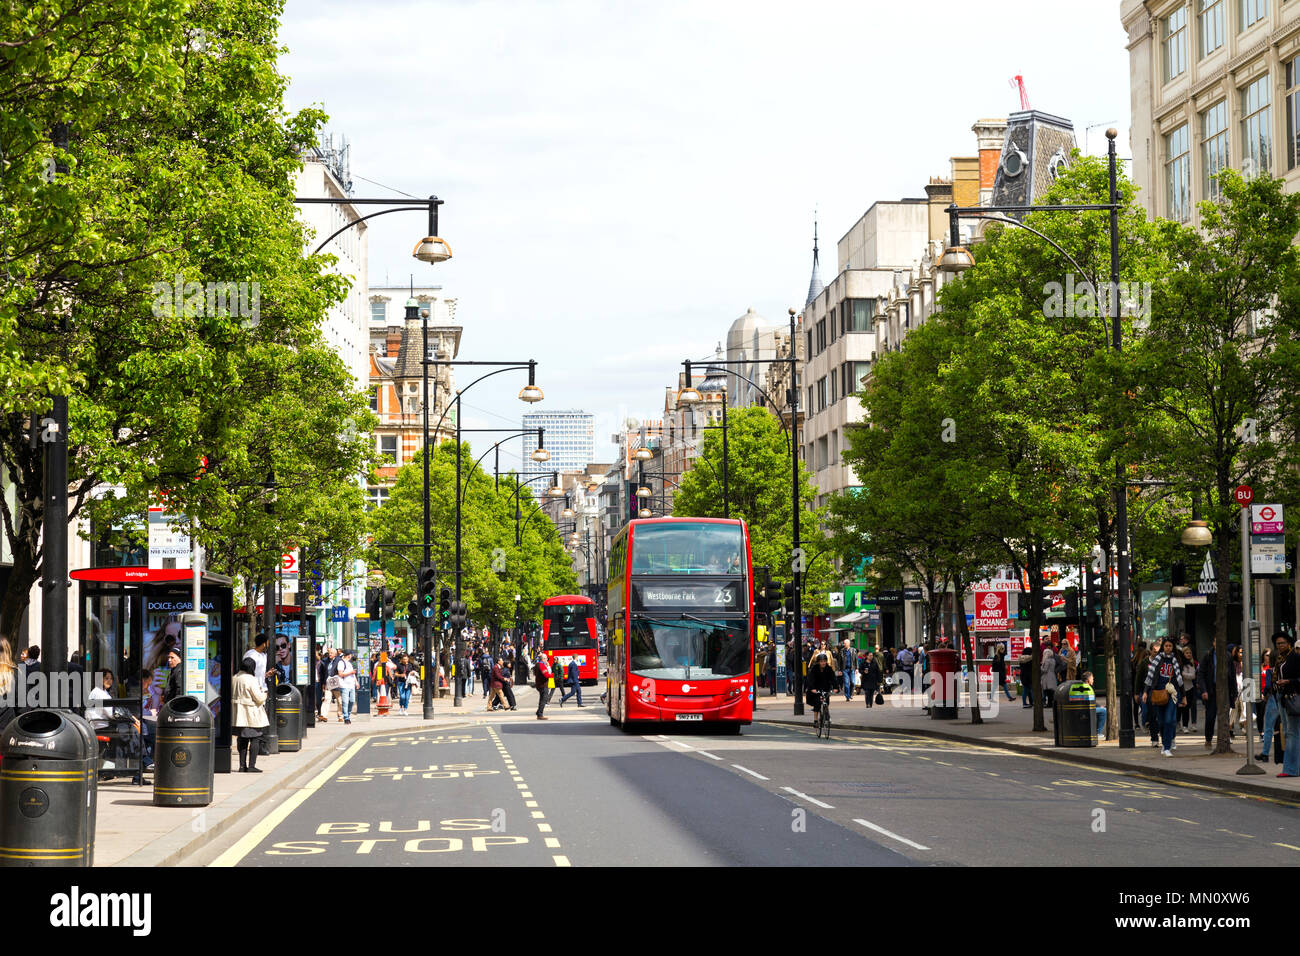 Busse, die nach oben und unten die belebte Einkaufsstraße im Zentrum von London - Oxford Street, London, UK Stockfoto